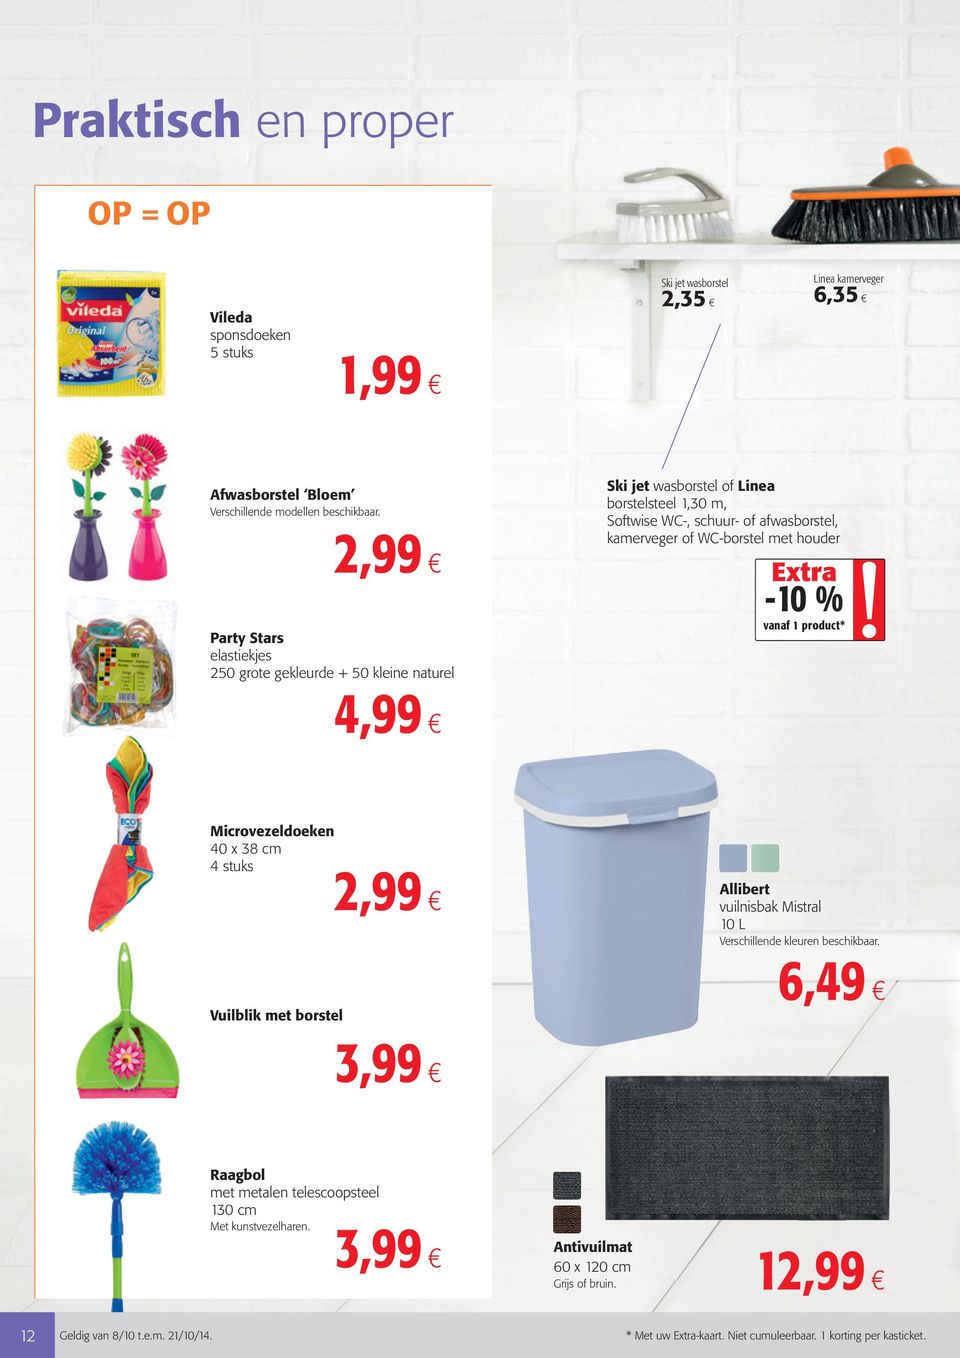 WC-borstel met houder -10 % 1 product* Microvezeldoeken 40 x 38 cm 4 stuks 2,99 Vuilblik met borstel Allibert vuilnisbak Mistral 10 L Verschillende kleuren beschikbaar.